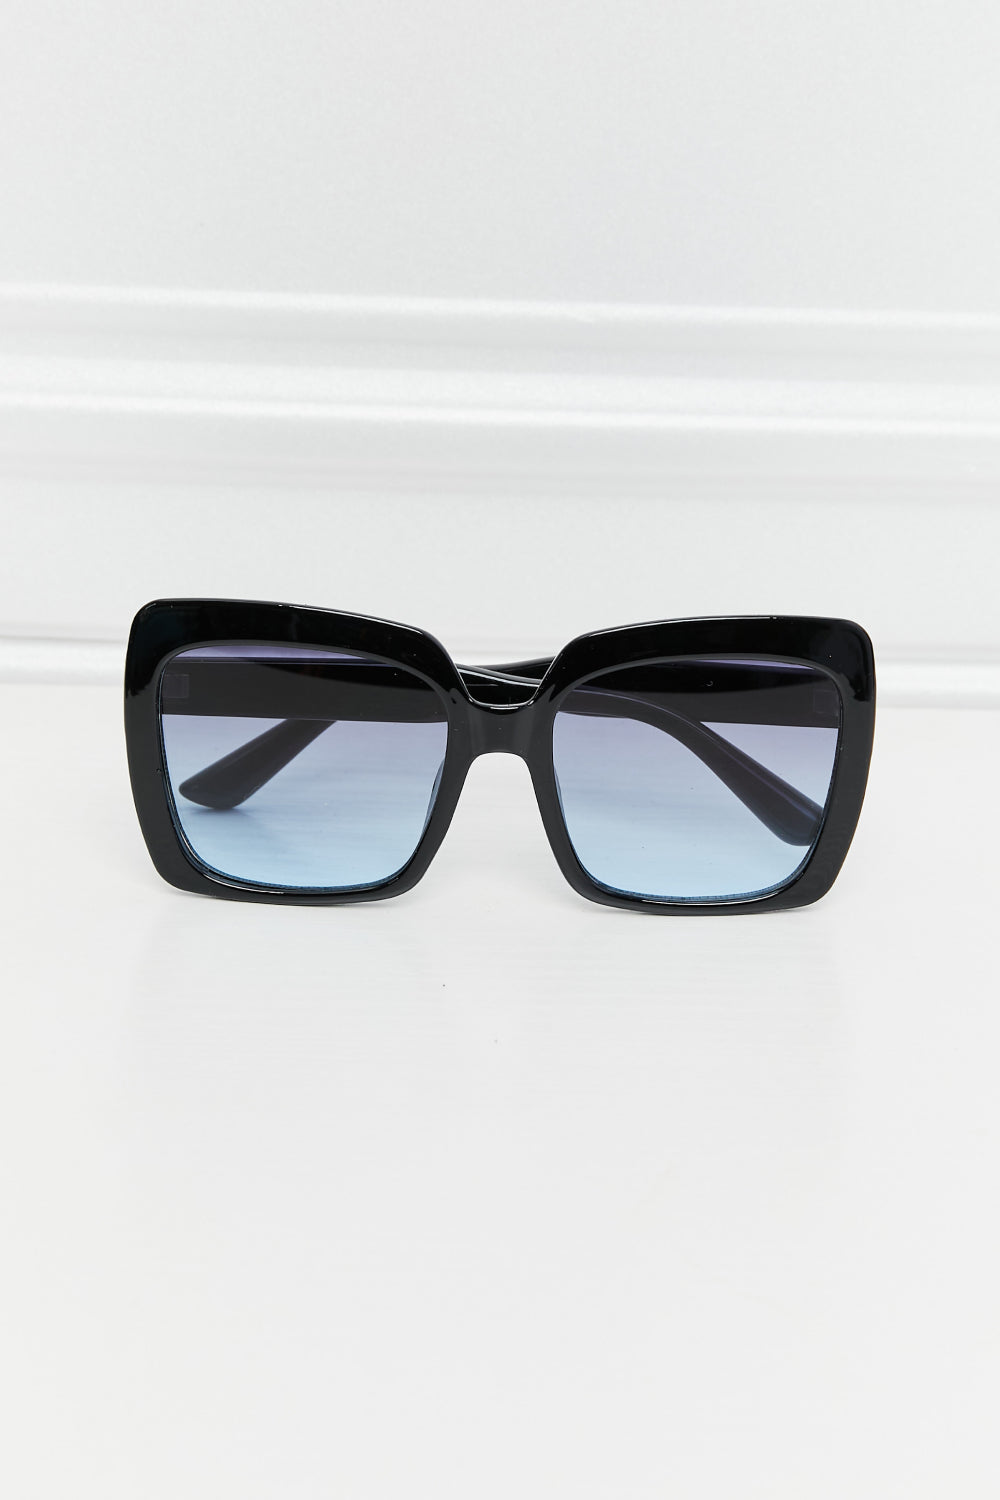 Square Full Rim Sunglasses apparel & accessories